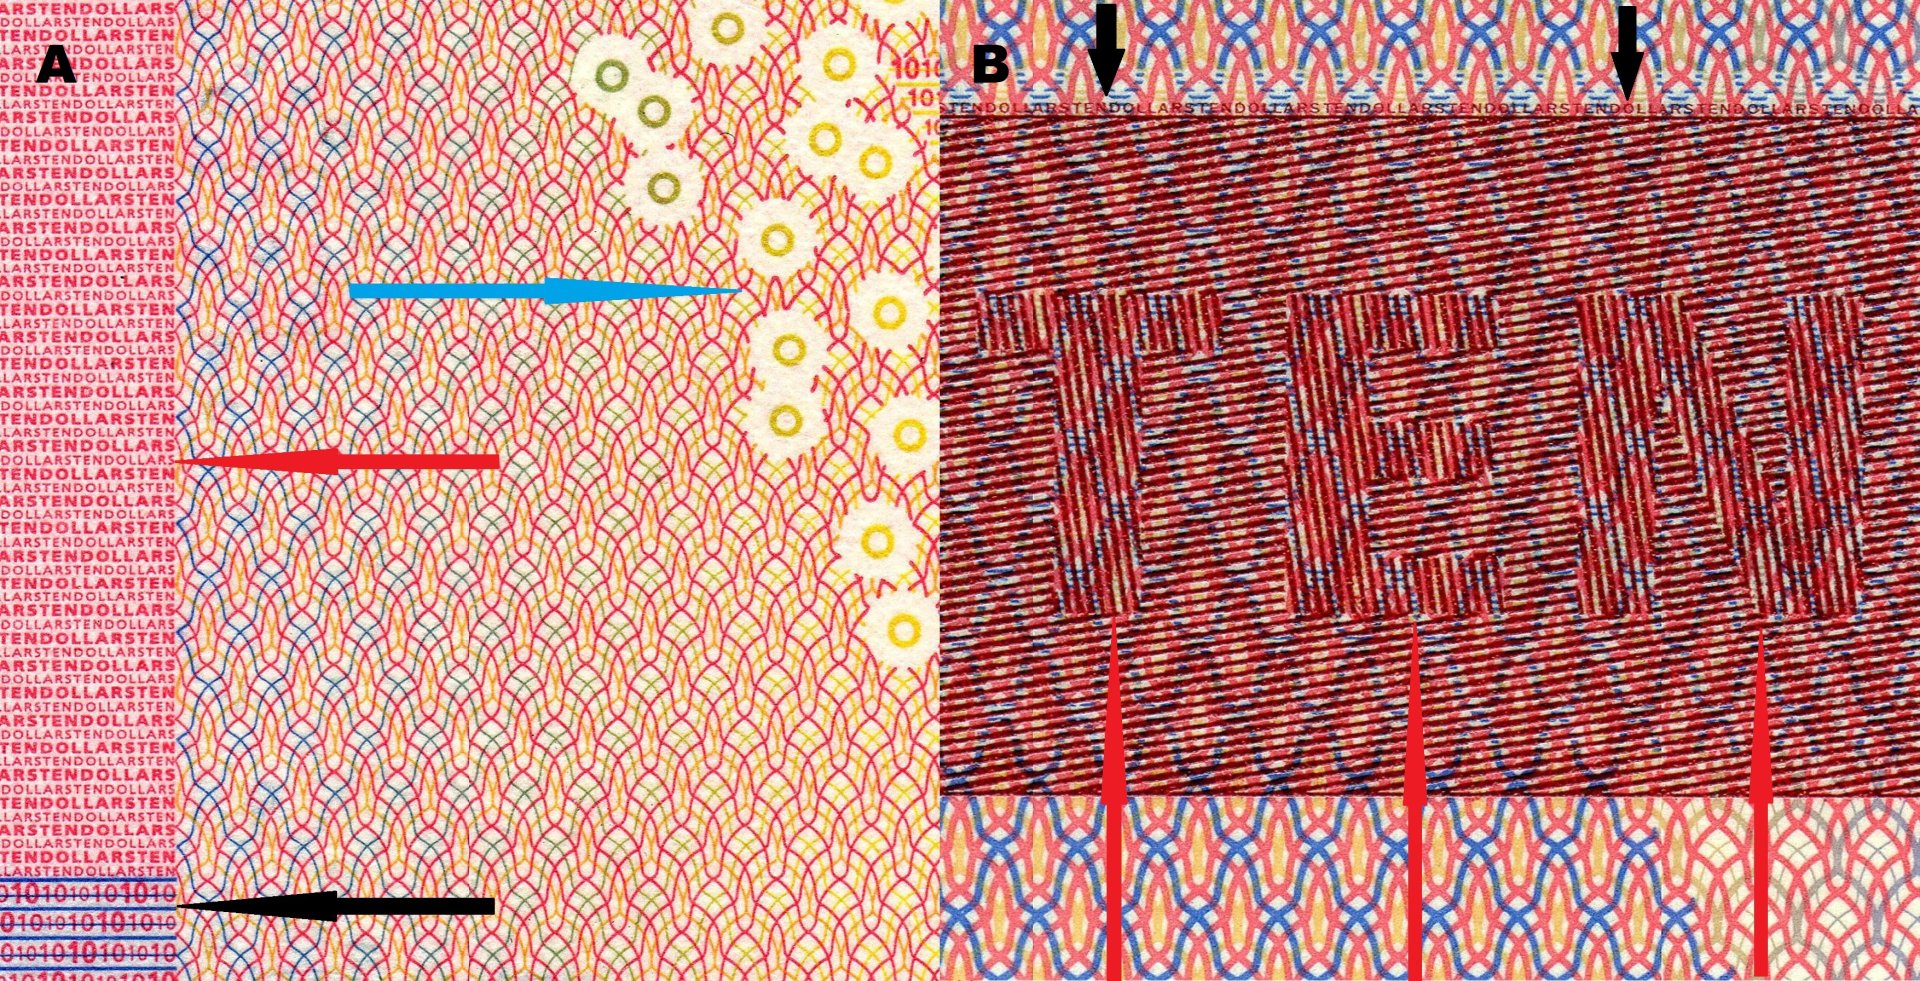 Obr. 2 A) Detail pozitivního mikropísma (červená šipka) a nominálu (černá šipka) na kraji bankovky a omron kroužky (modrá šipka).  B) Pole s latentním opisem "TEN" (červené šipky) a řádek mikropísma (černé šipky).